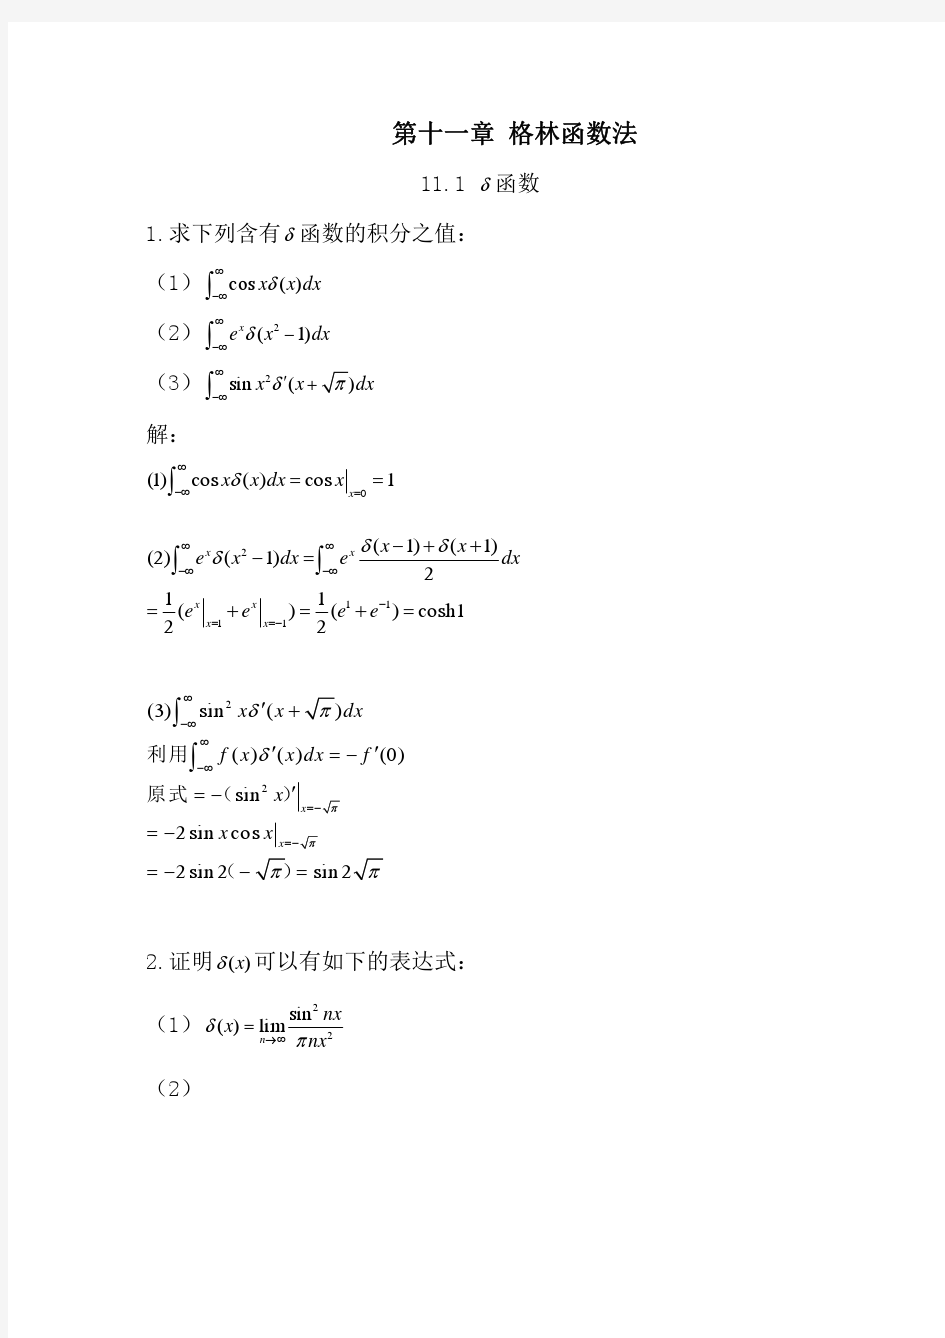 数学物理方法答案(11) 刘连寿